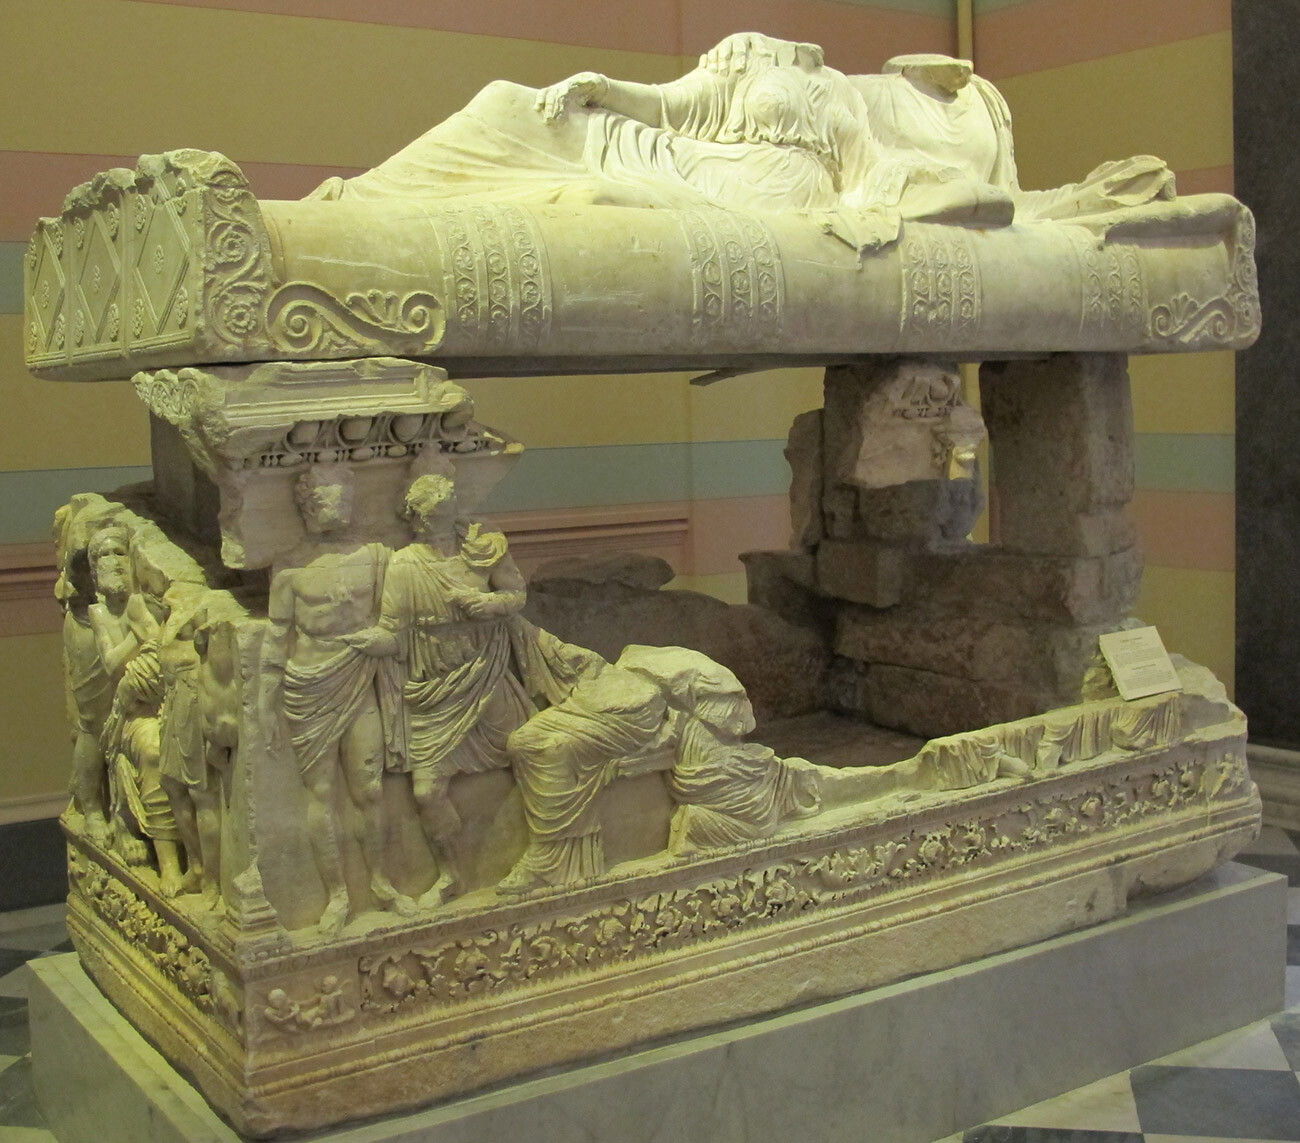 Le sarcophage de Myrmekion dans la collection de l’Ermitage